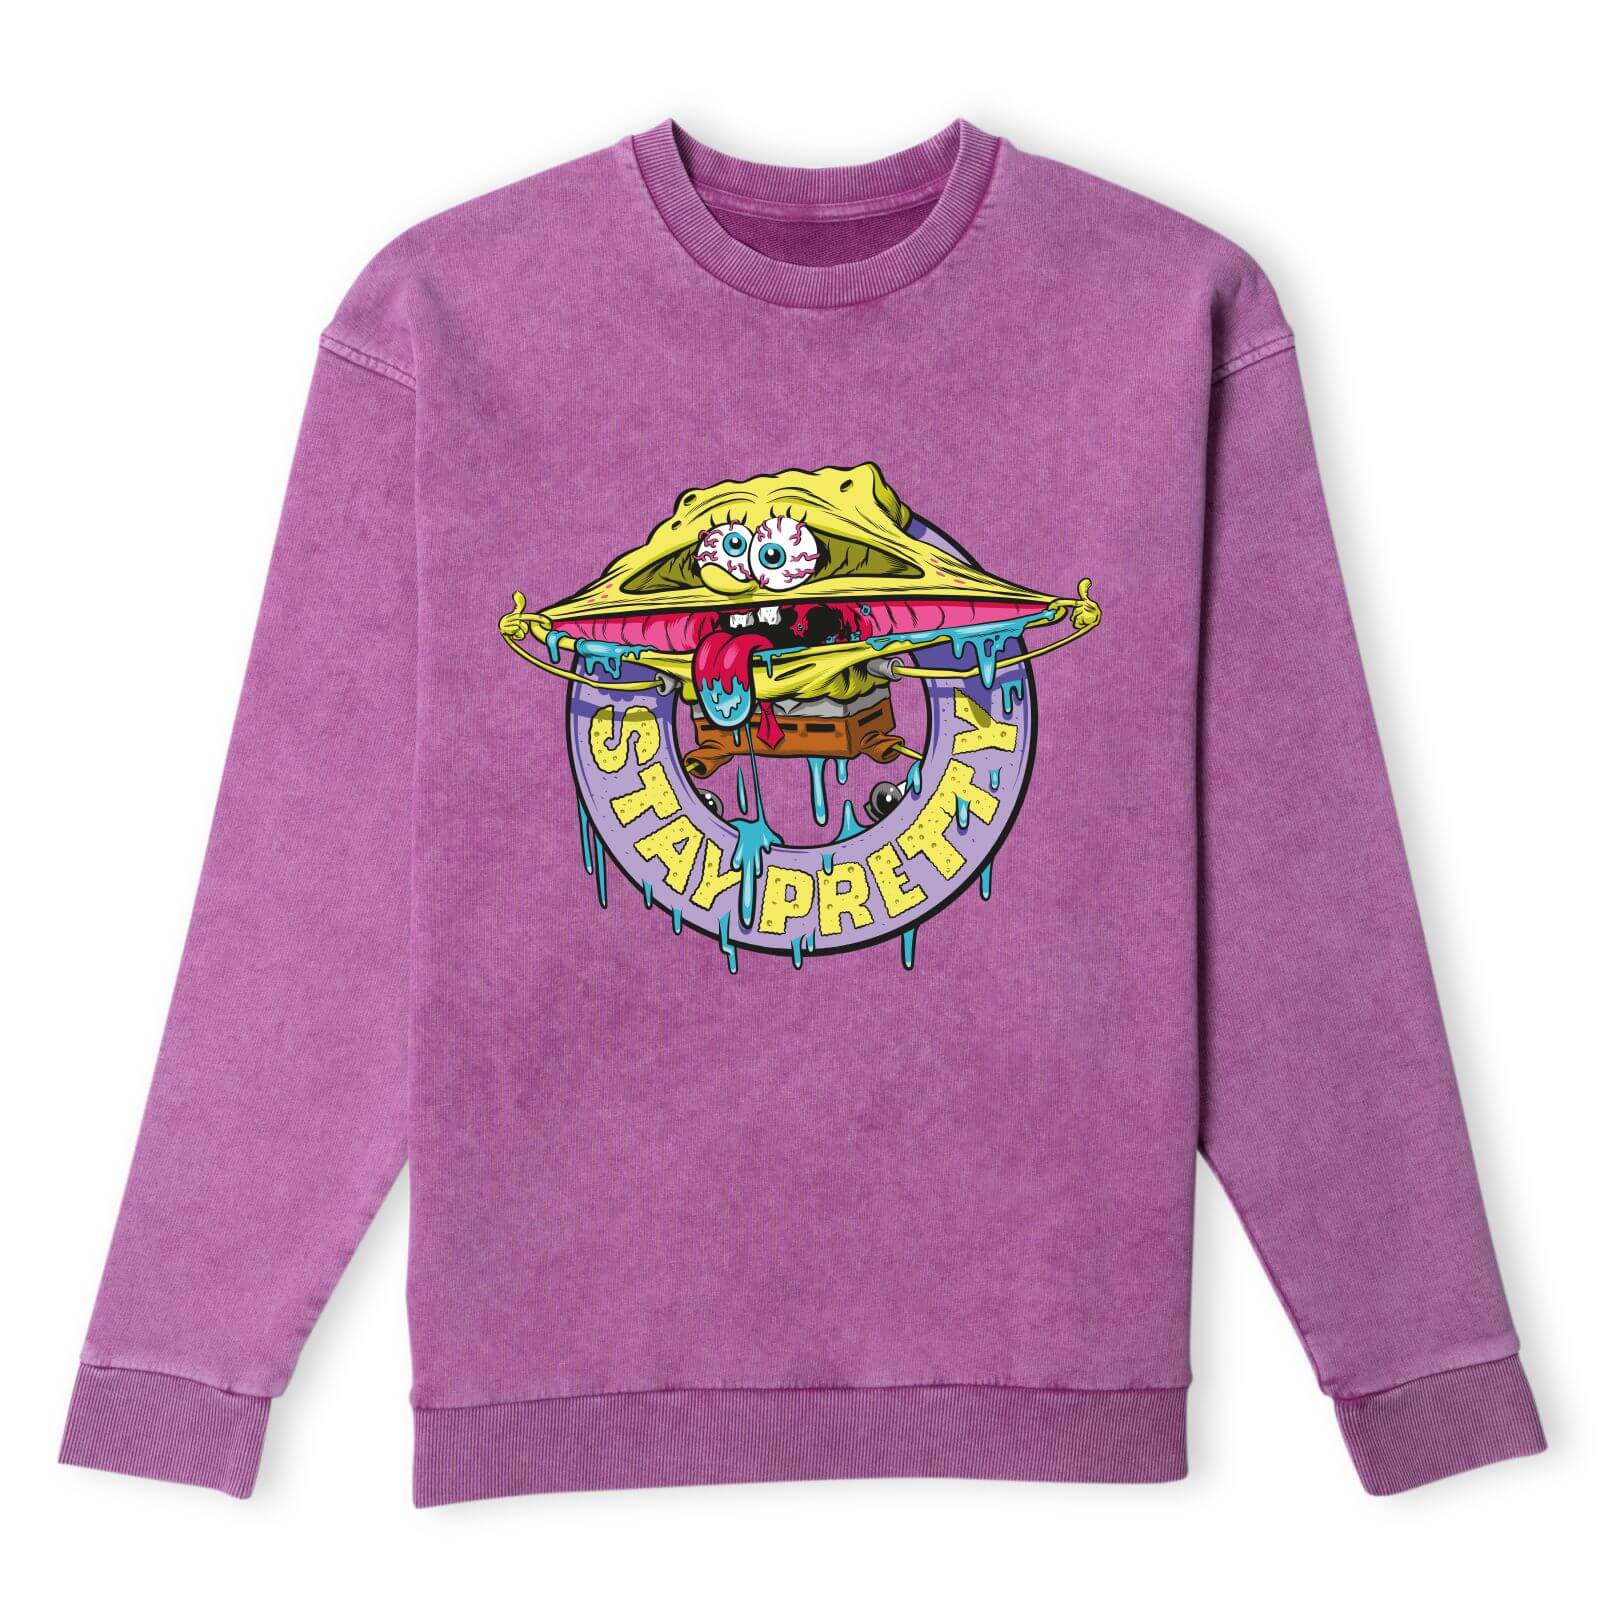 Spongebob Squarepants Stay Pretty Sweatshirt - Purple Acid Wash - XS - Purple Acid Wash